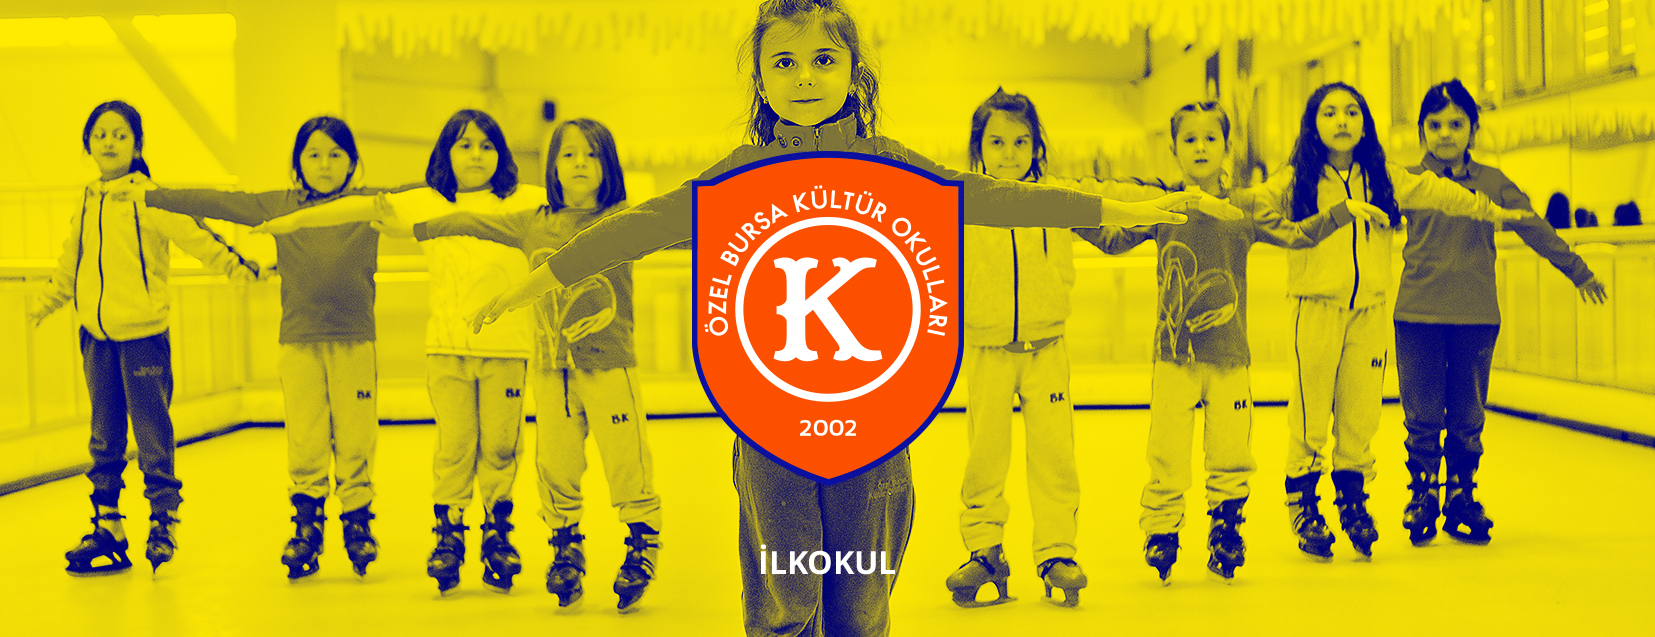 Özel Bursa Kültür İlkokulu